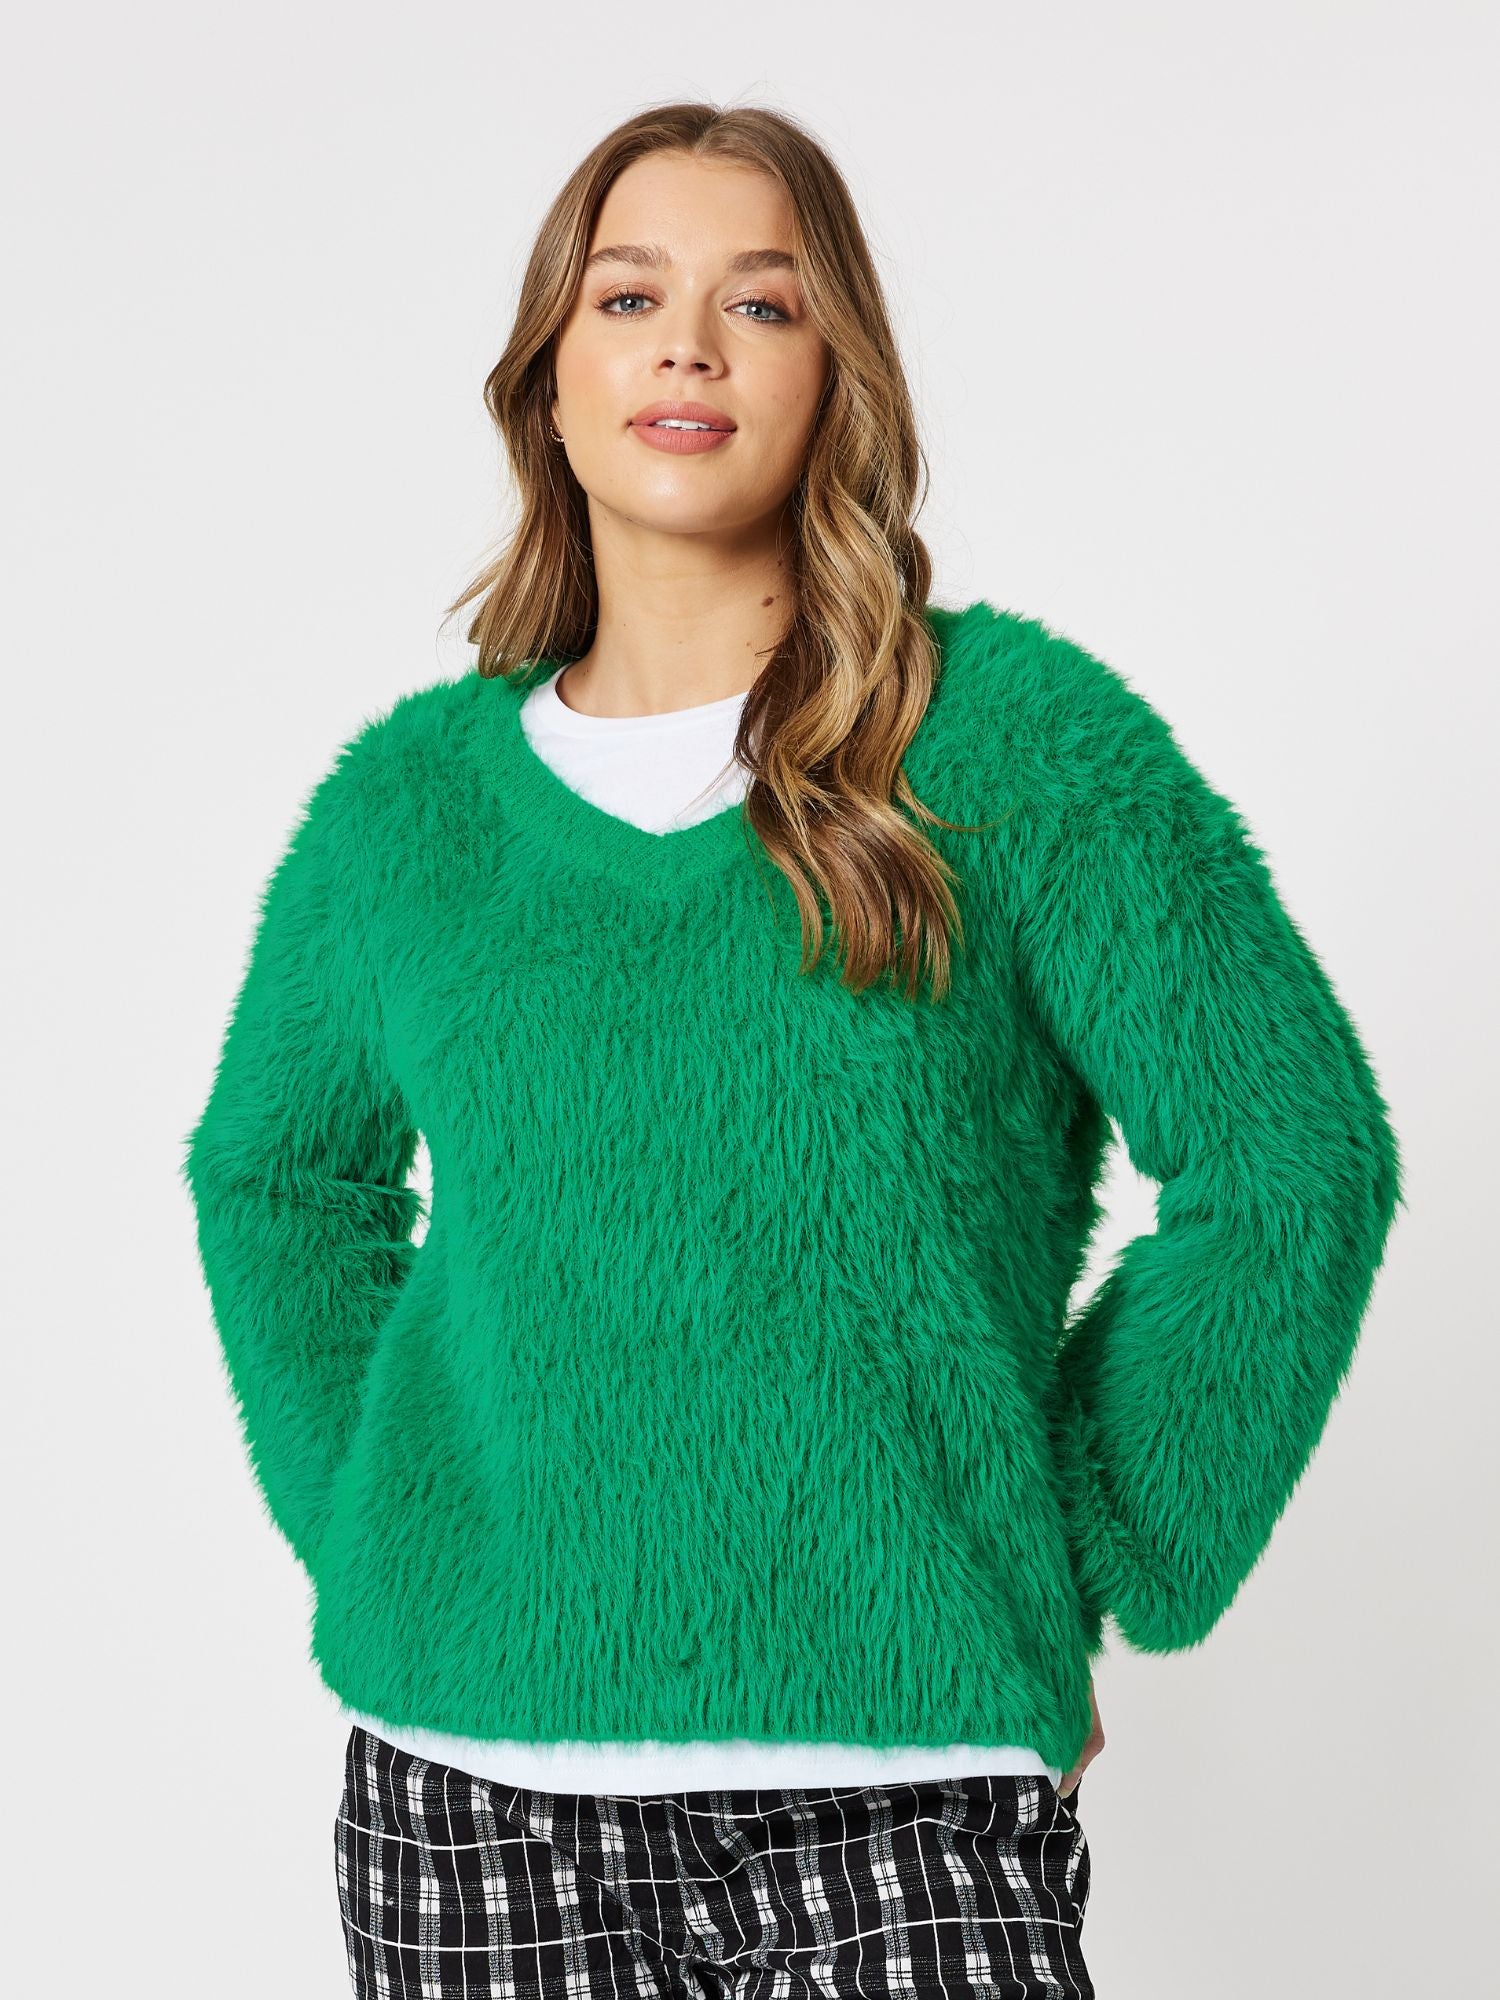 Fluffy V neck Knit Top Jumper - Green